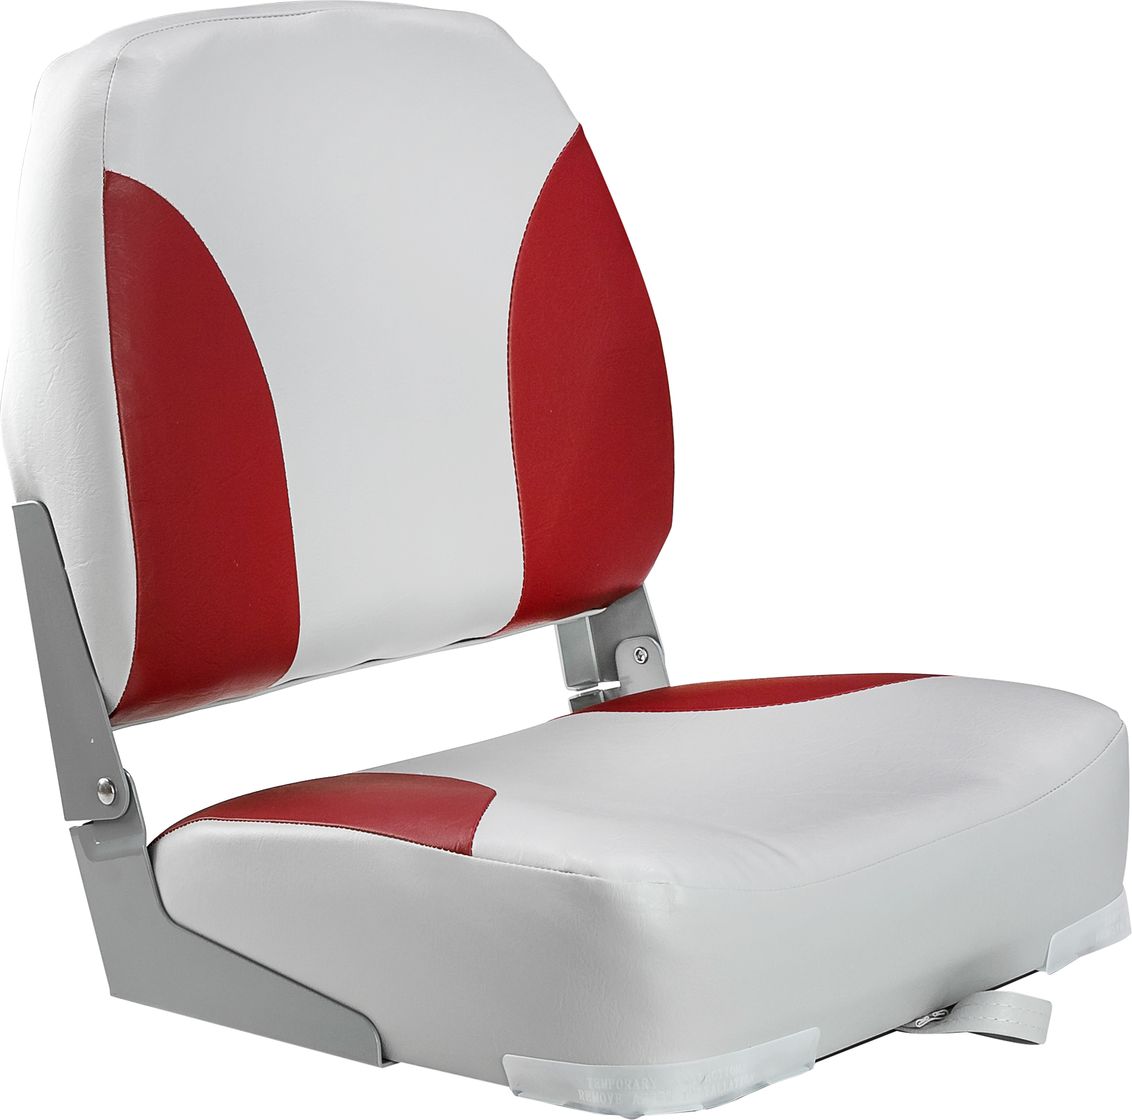 Кресло мягкое складное Classic, обивка винил, цвет серый/красный, Marine Rocket 75102GR-MR пдэ морские обитатели